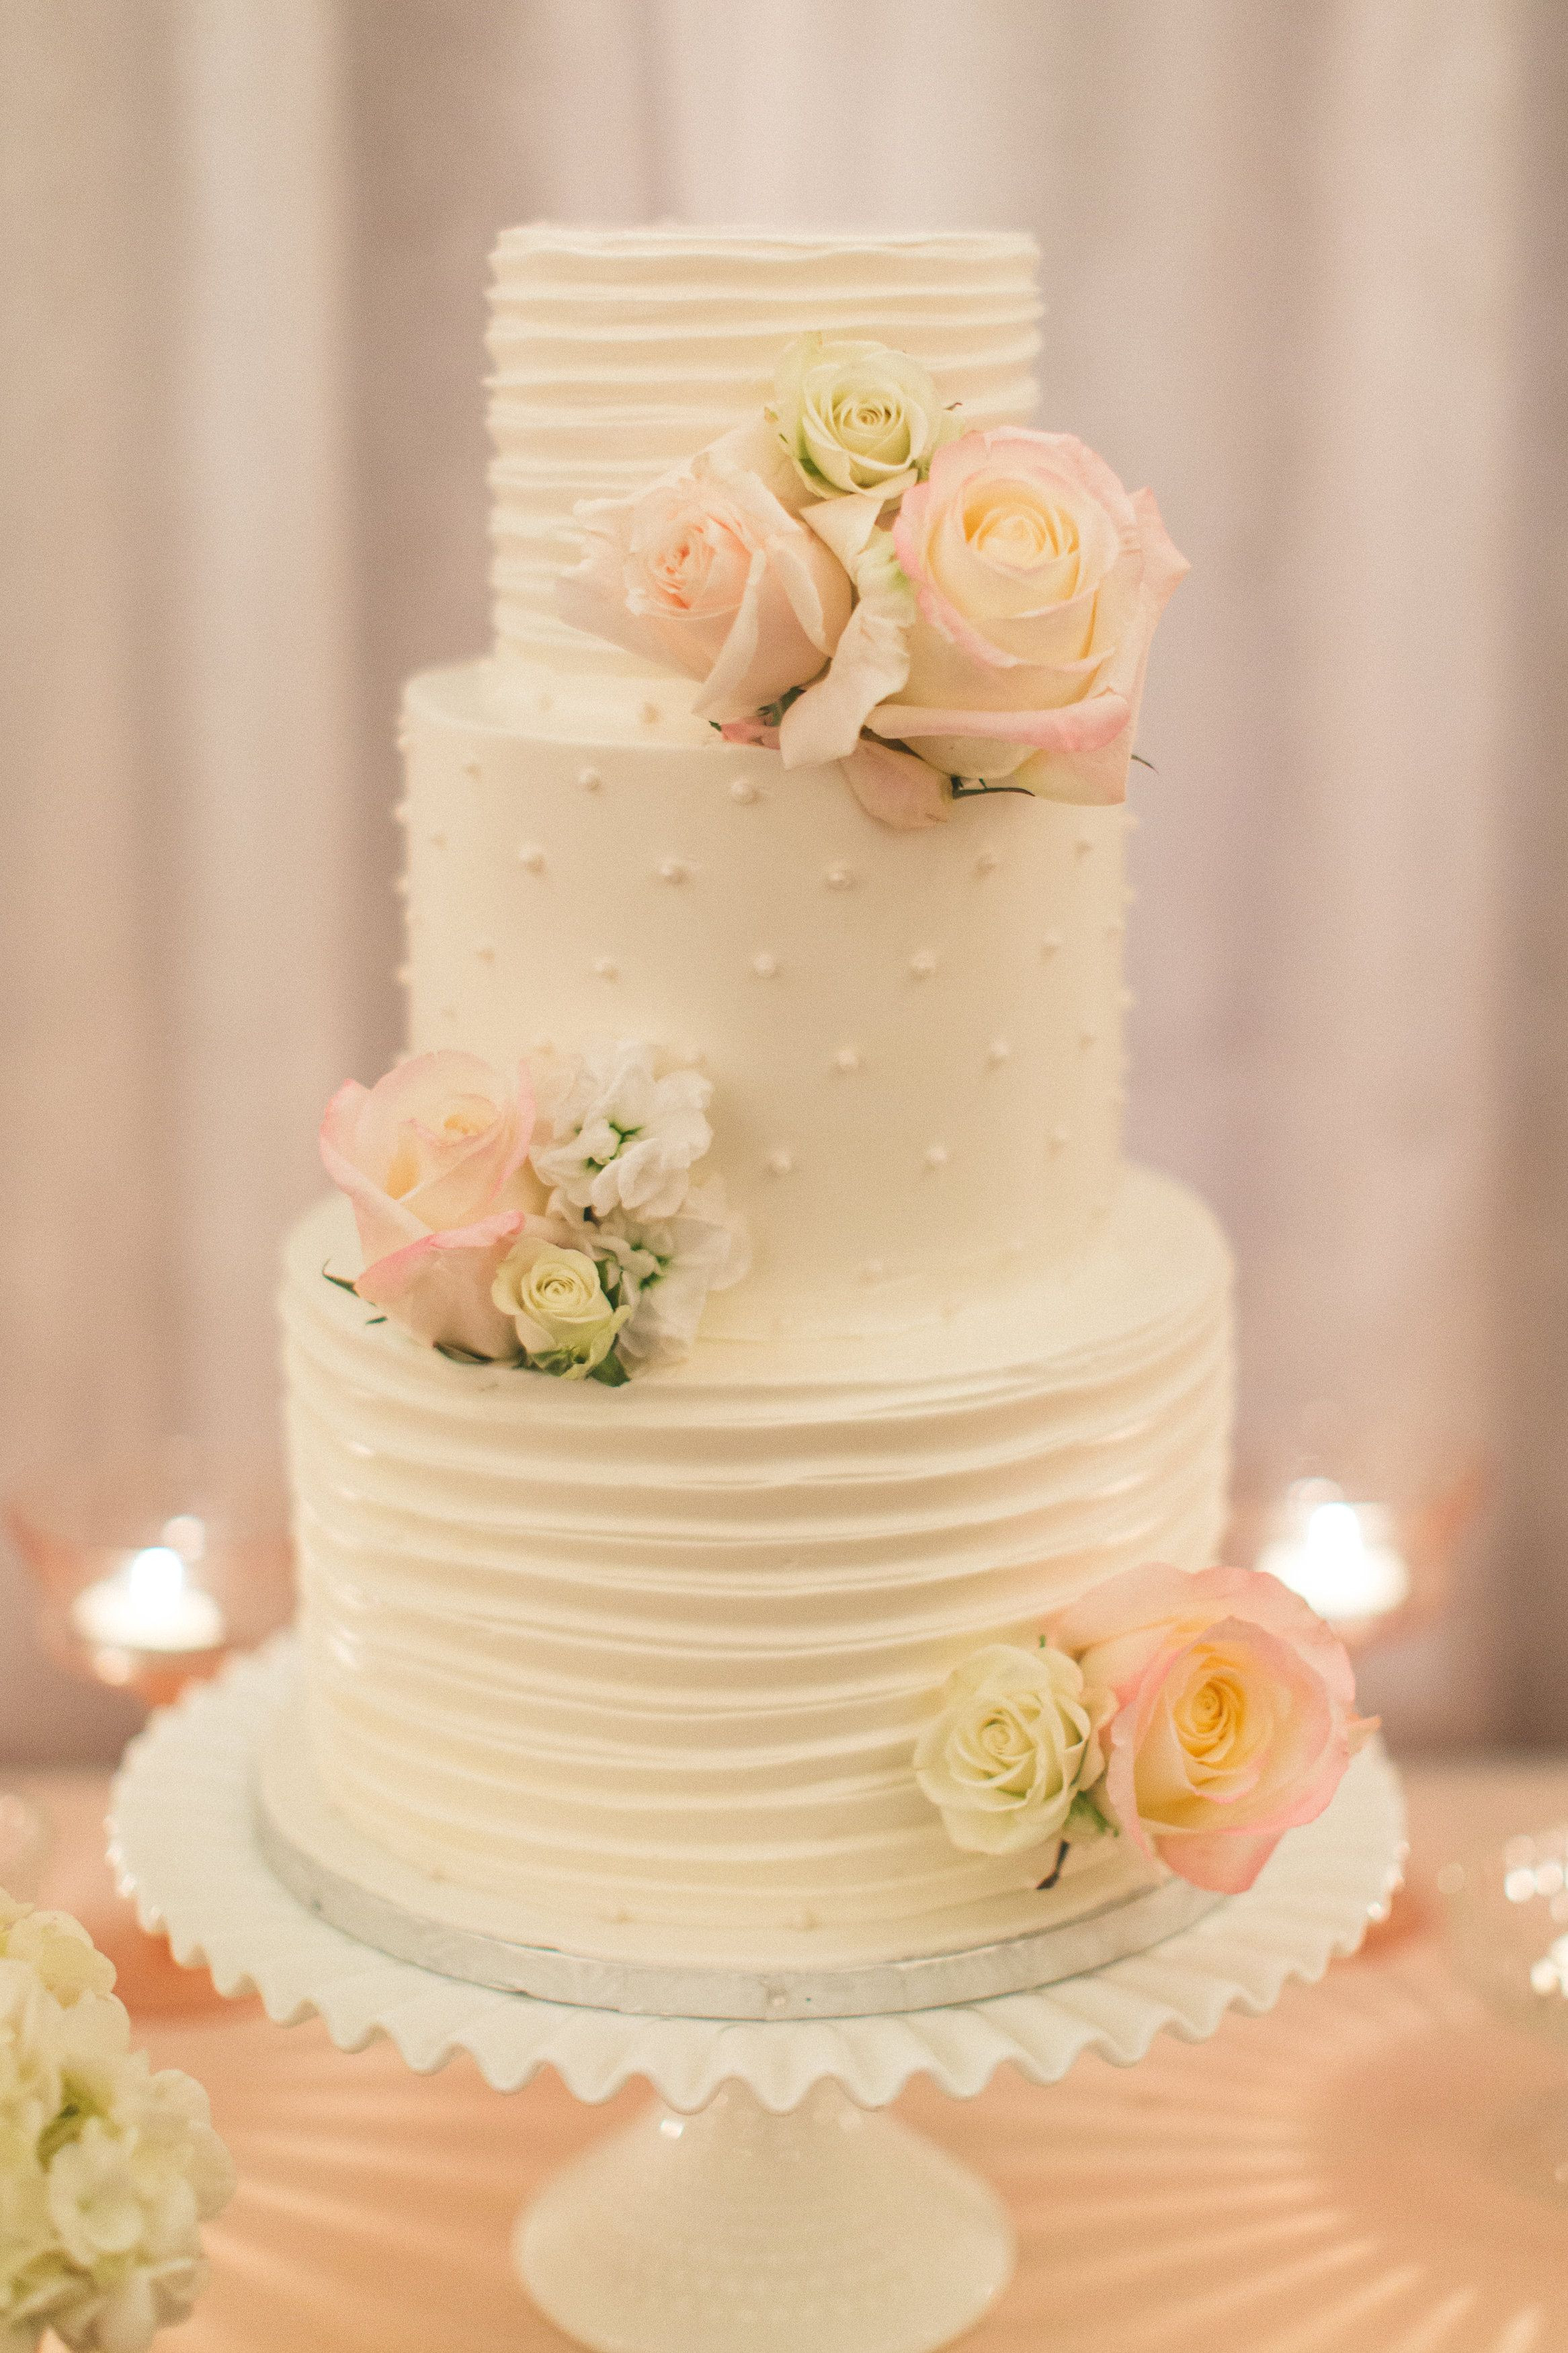 Wedding Cakes Delaware
 Best 25 Wedding cake fresh flowers ideas on Pinterest